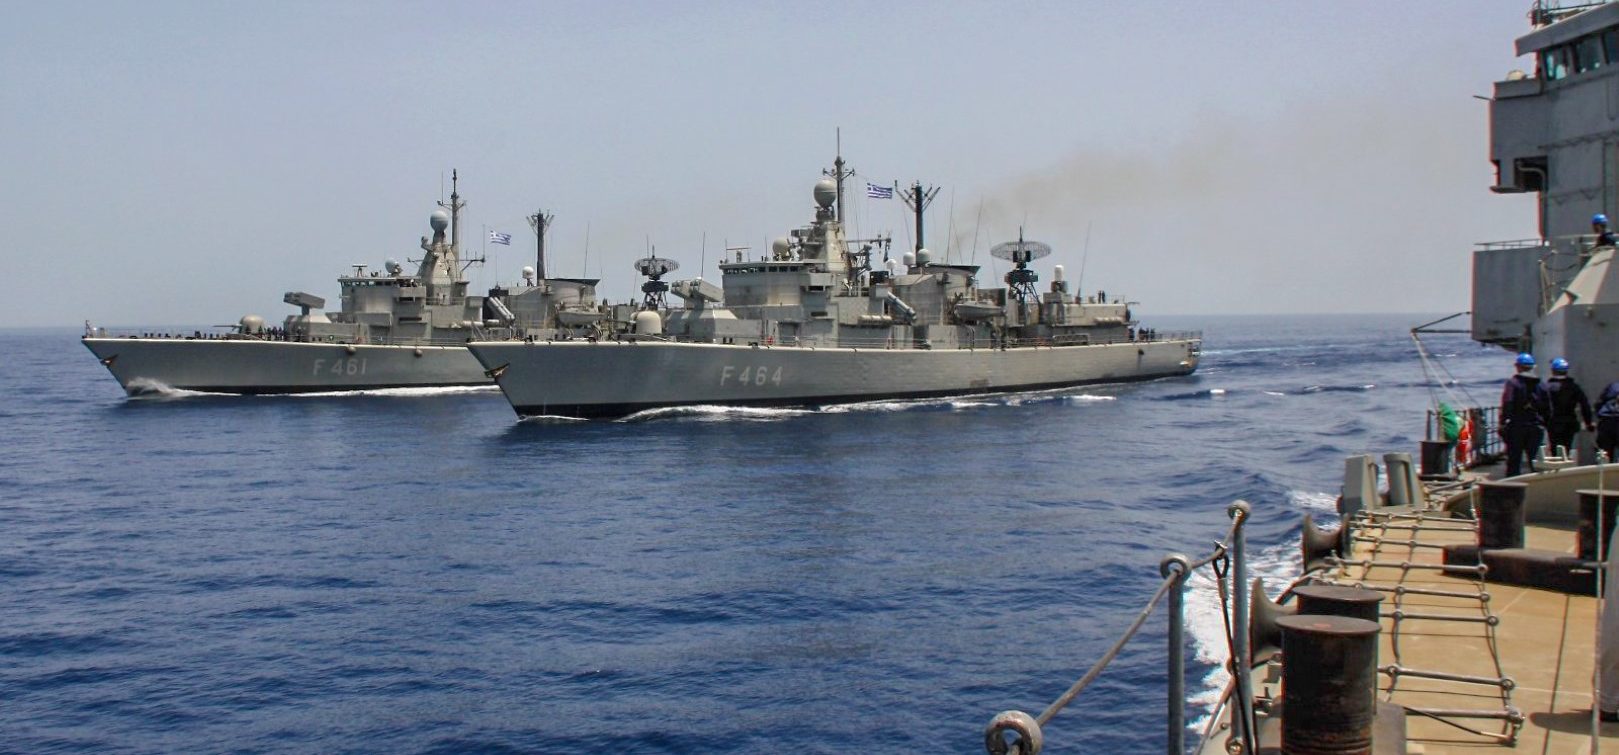 Η Λάρισα στρατηγείο της επιχείρησης για την Ερυθρά Θάλασσα – Θετική η ΕΕ στην πρόταση Ν. Δένδια